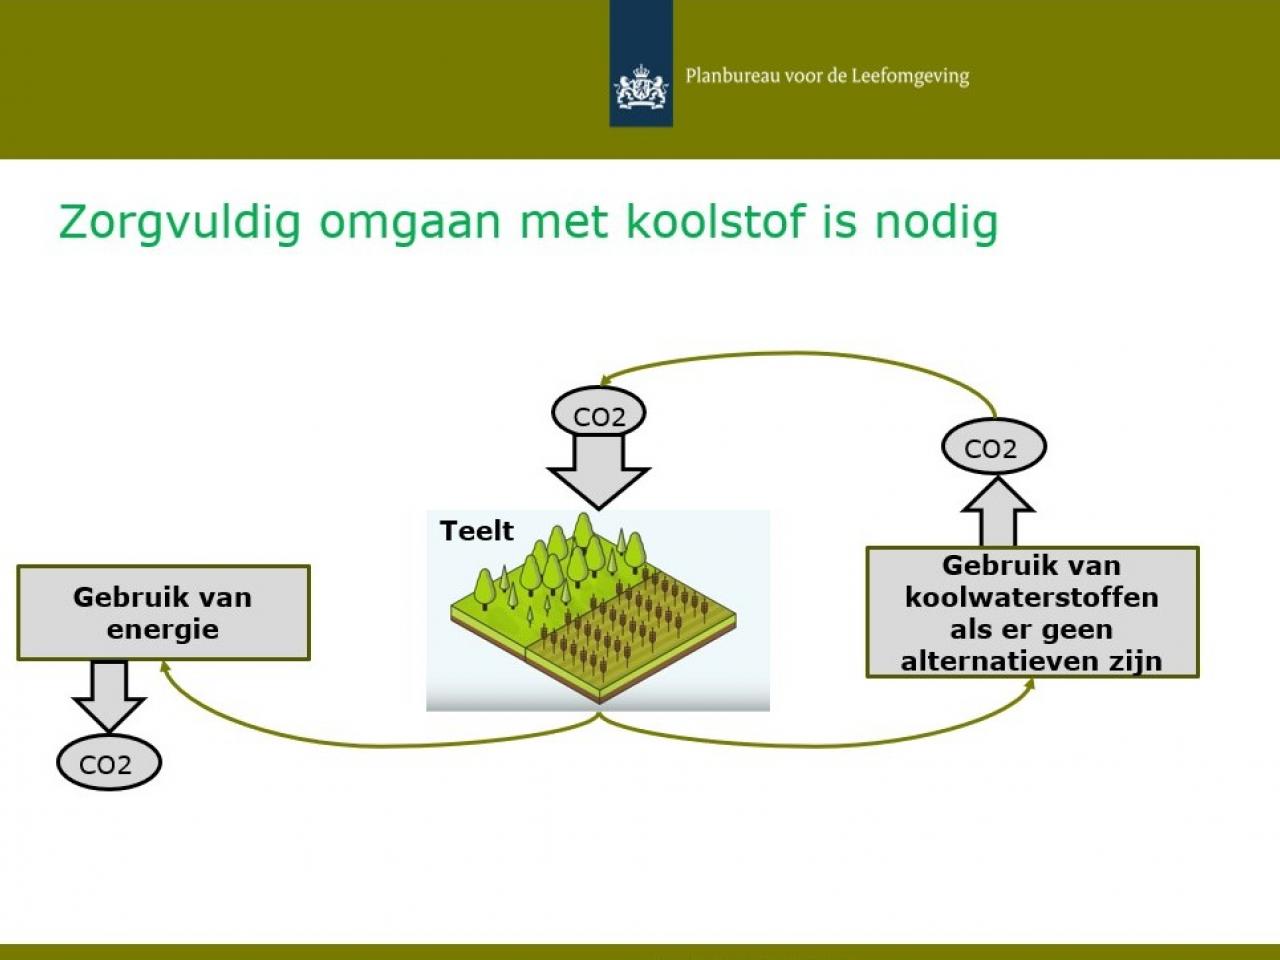 Slide uit presentatie van Jan Ros. Tekst op slide: “Zorgvuldig omgaan met koolstof is nodig”